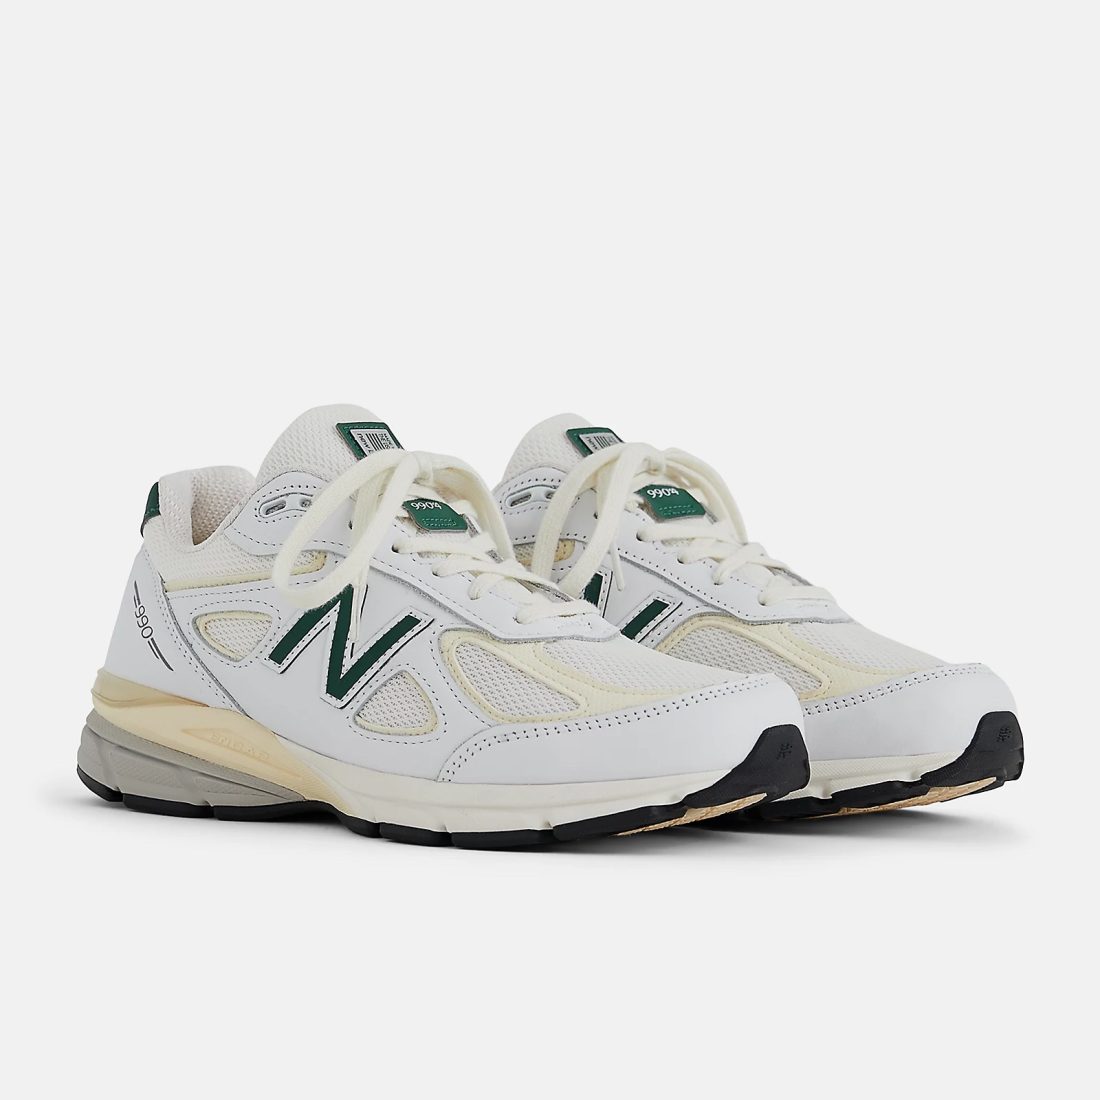 New Balance 990v4 Made in USA White Green - Le Site de la Sneaker